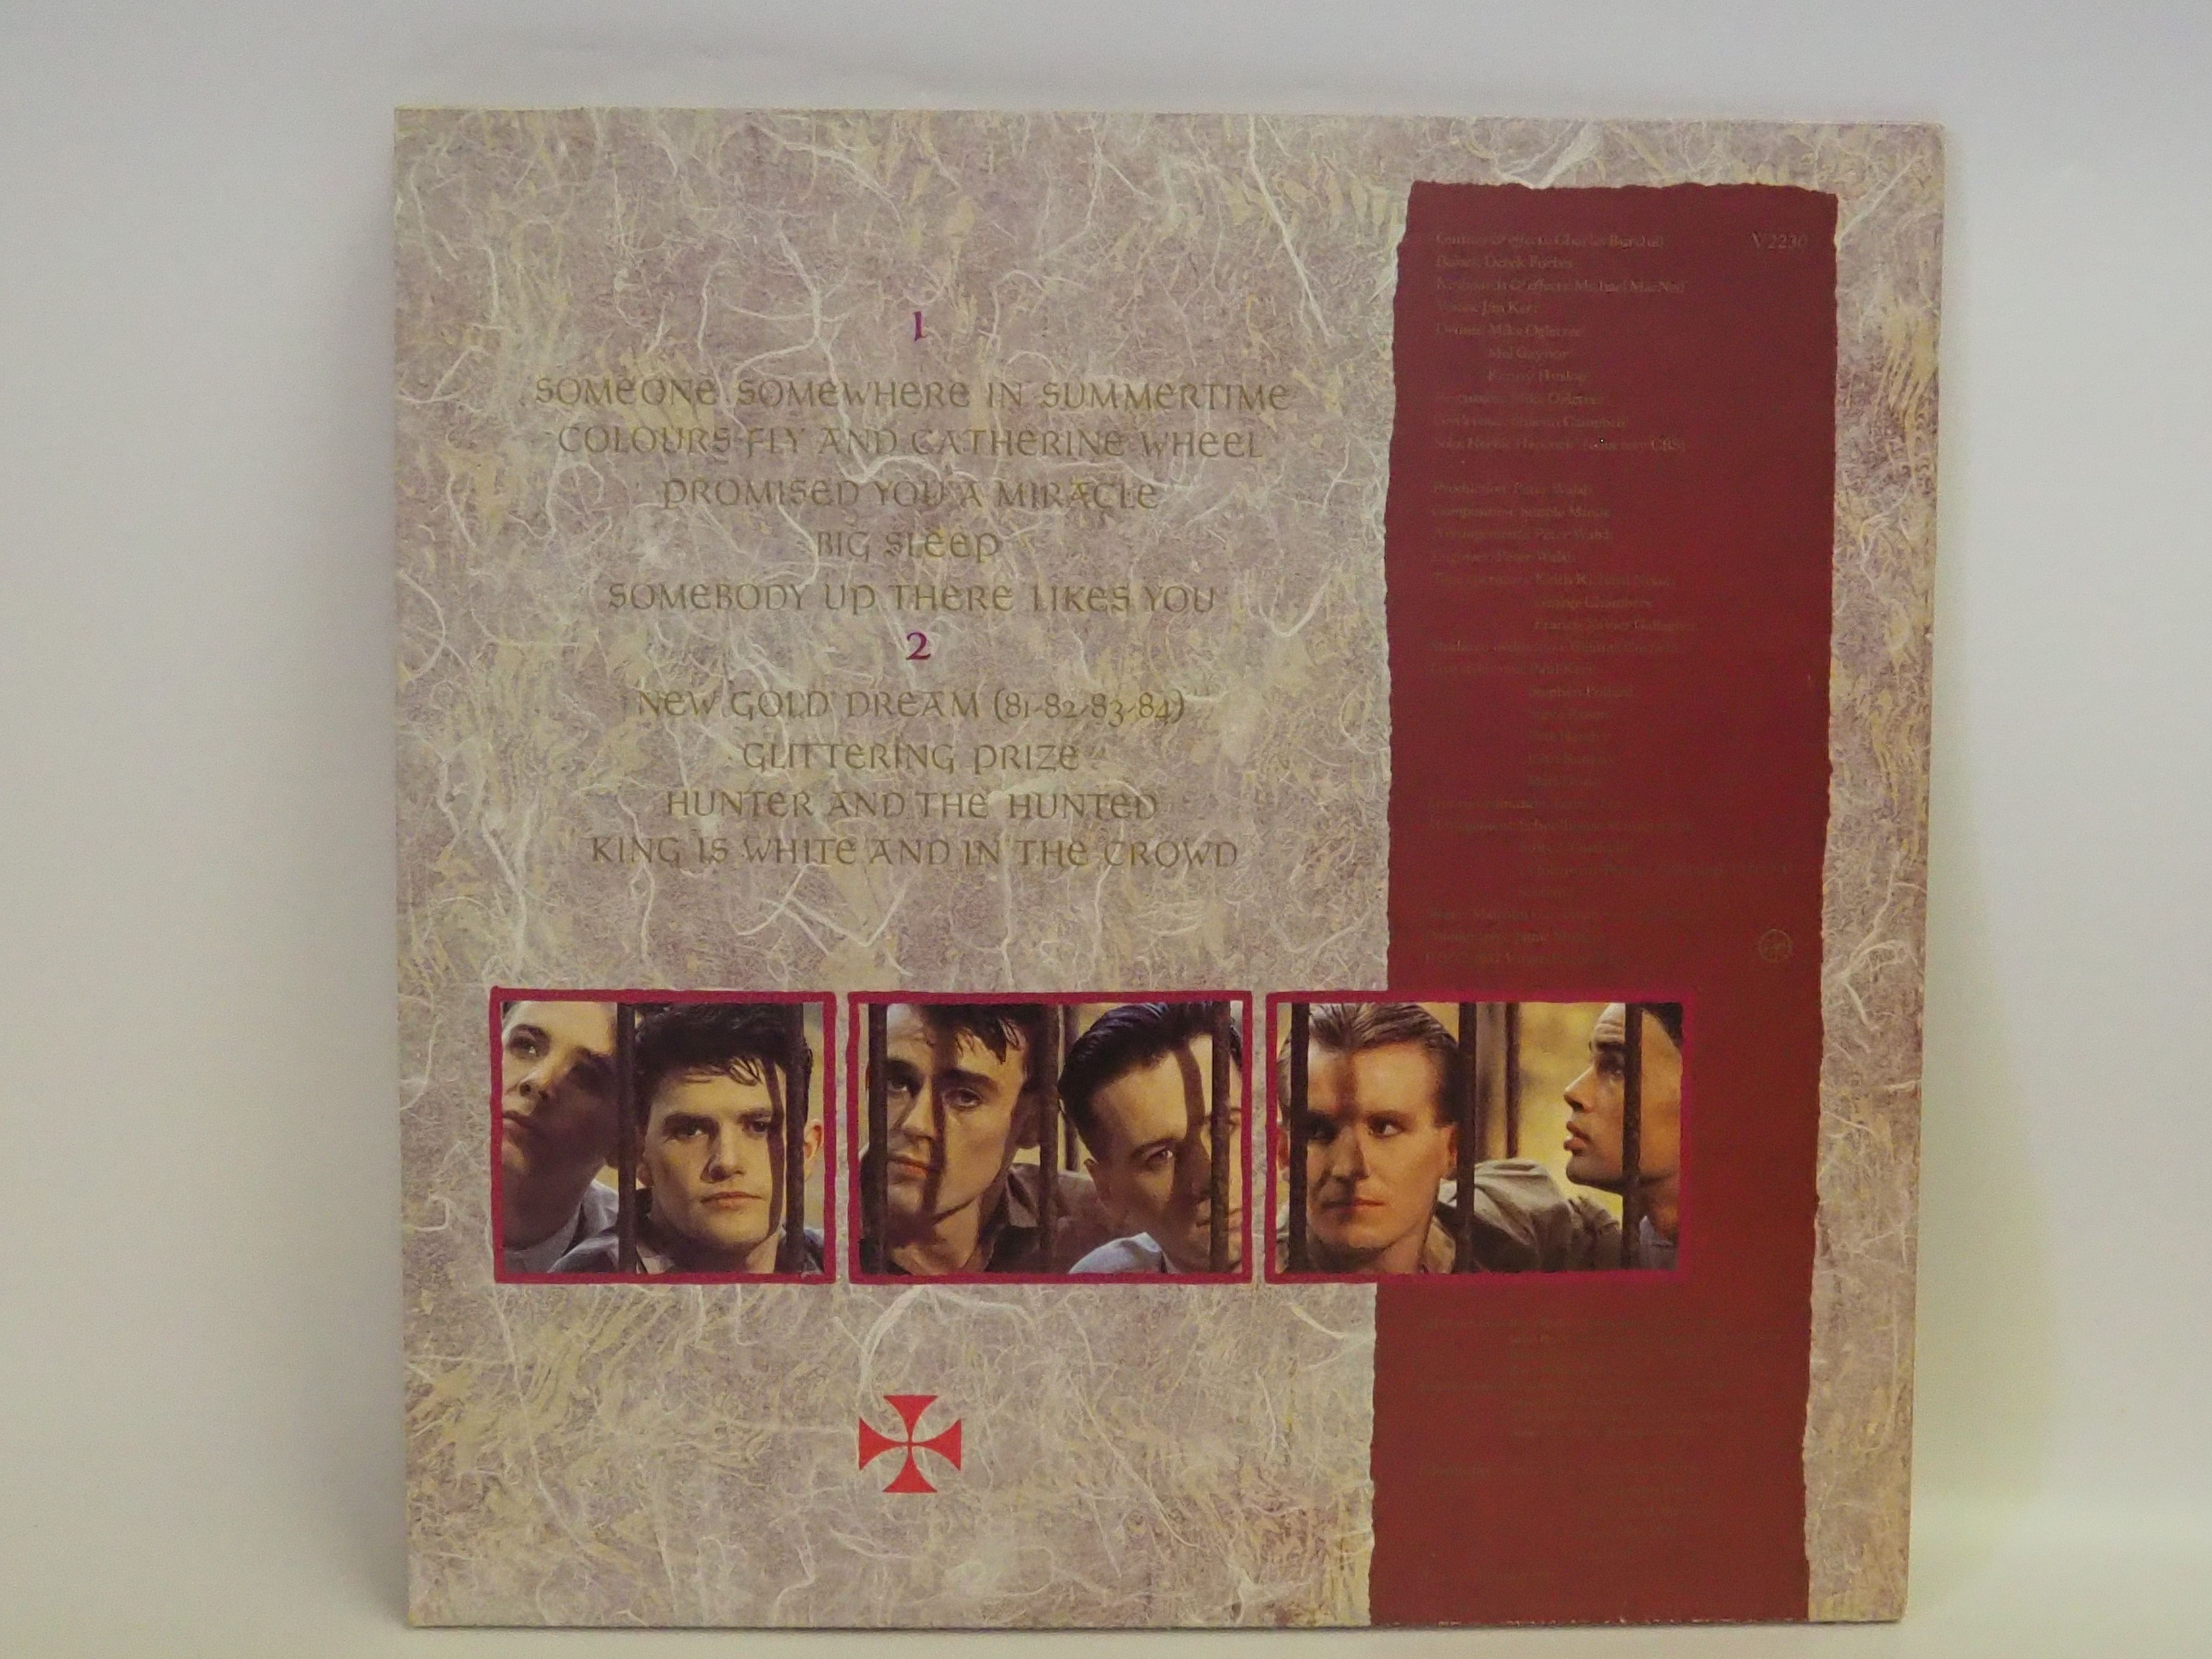 Simple Minds - New Gold Dream 12" Vinyl Album - Image 2 of 2